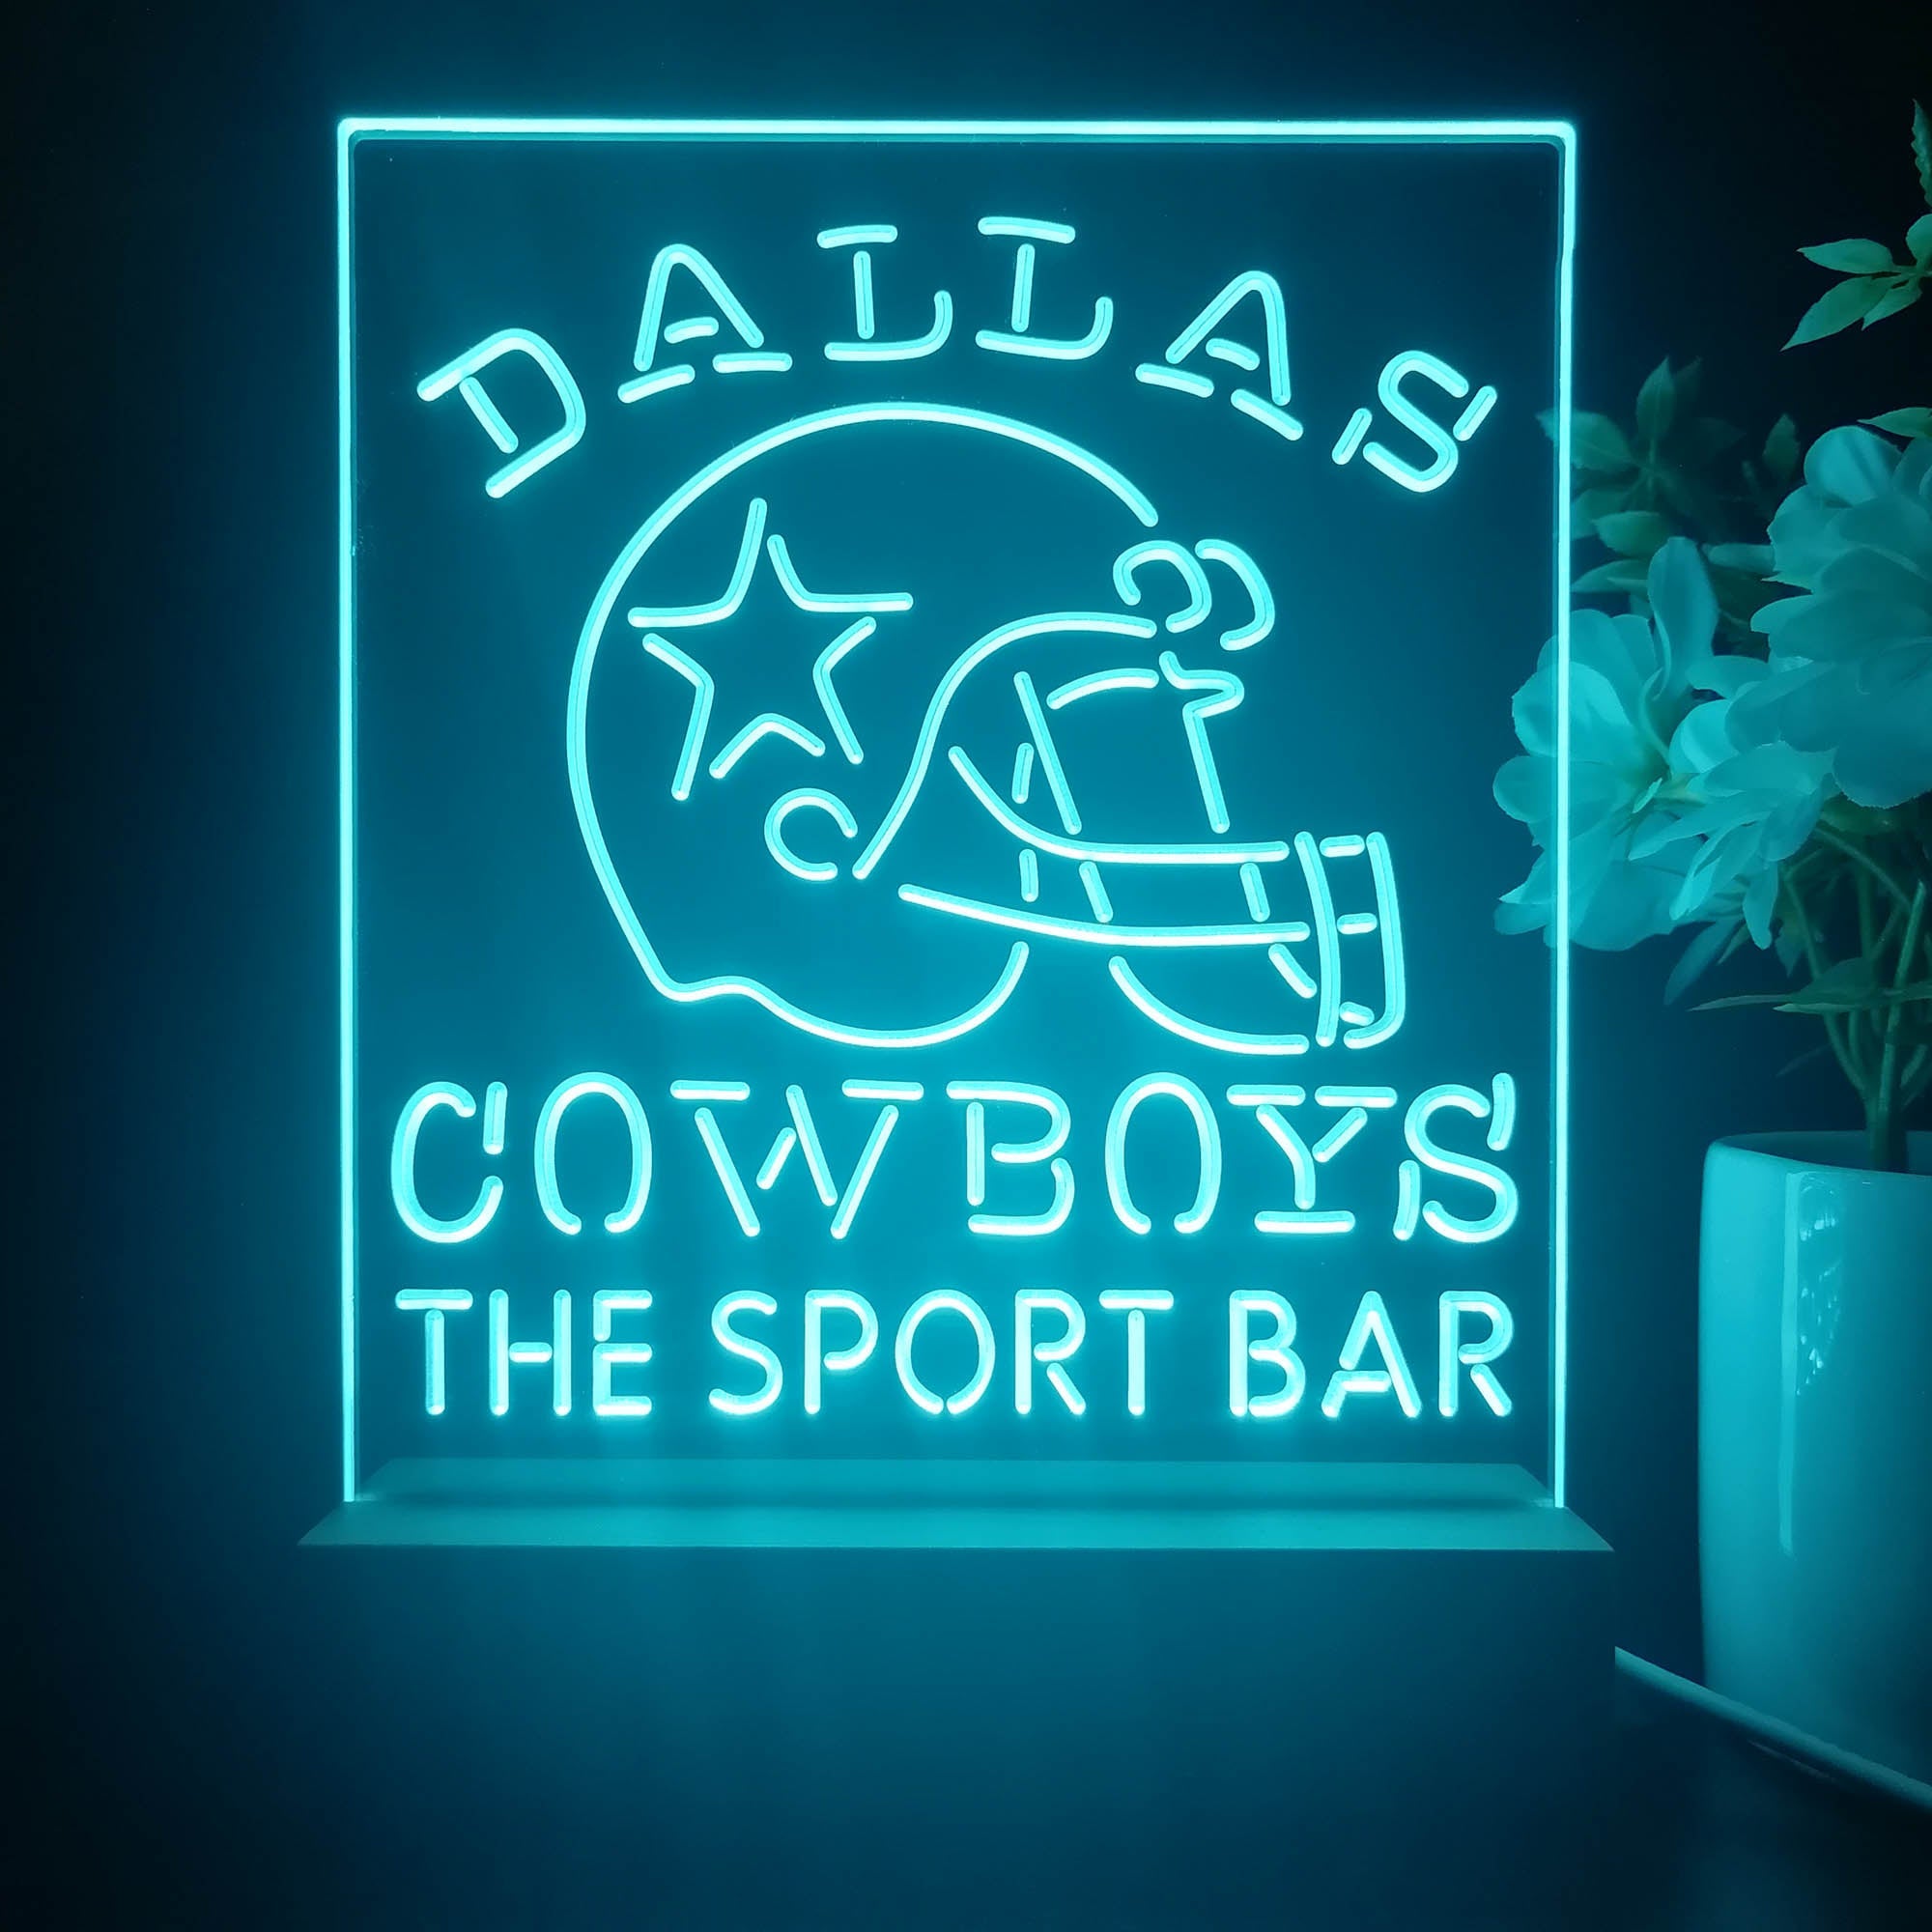 Personalized Dallas Cowboys Souvenir Neon LED Sign Lamp